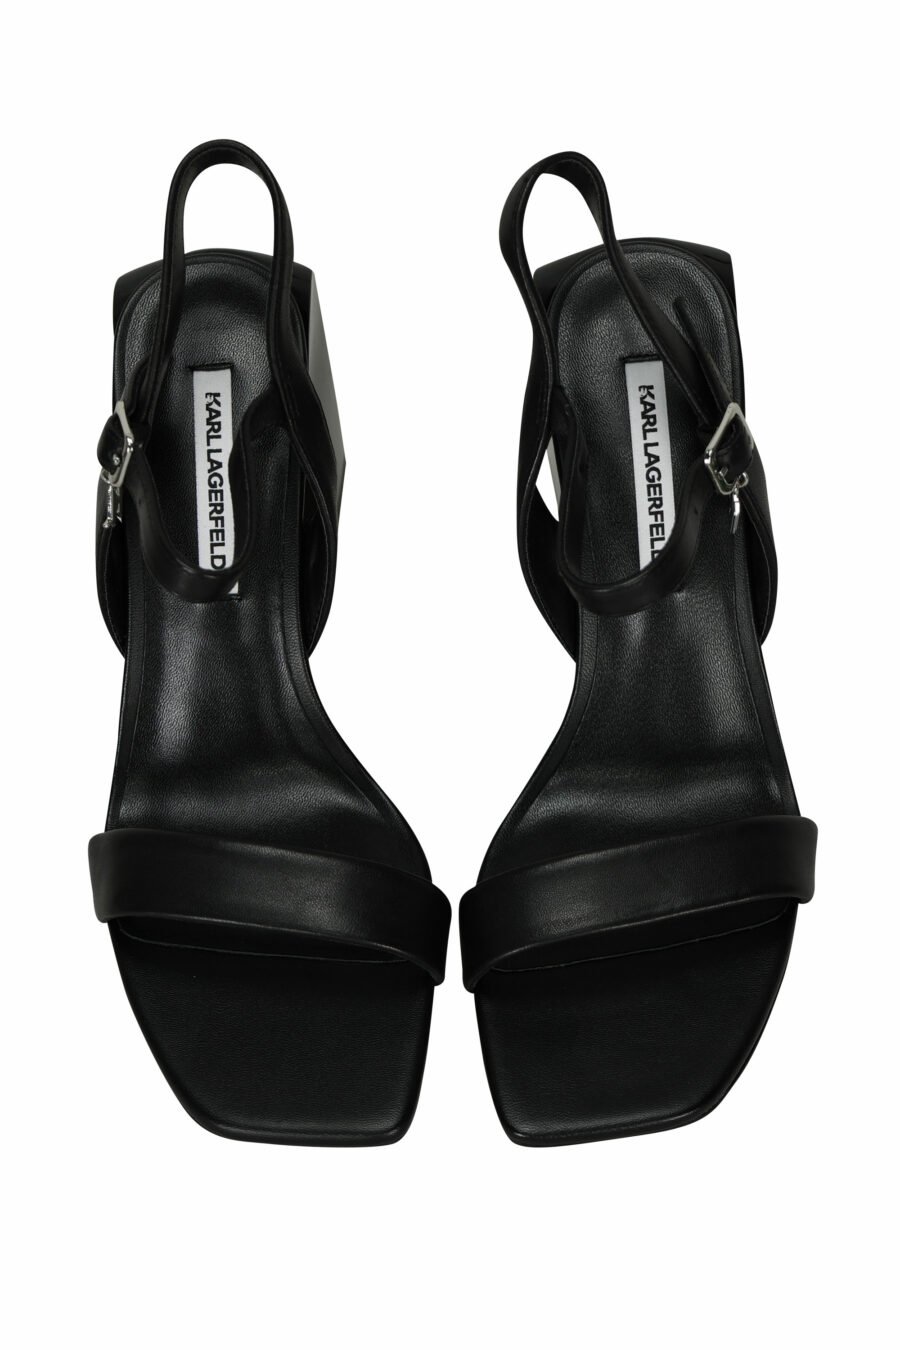 Sandálias pretas com salto grosso e mini-logotipo em charms - 5059529390289 4